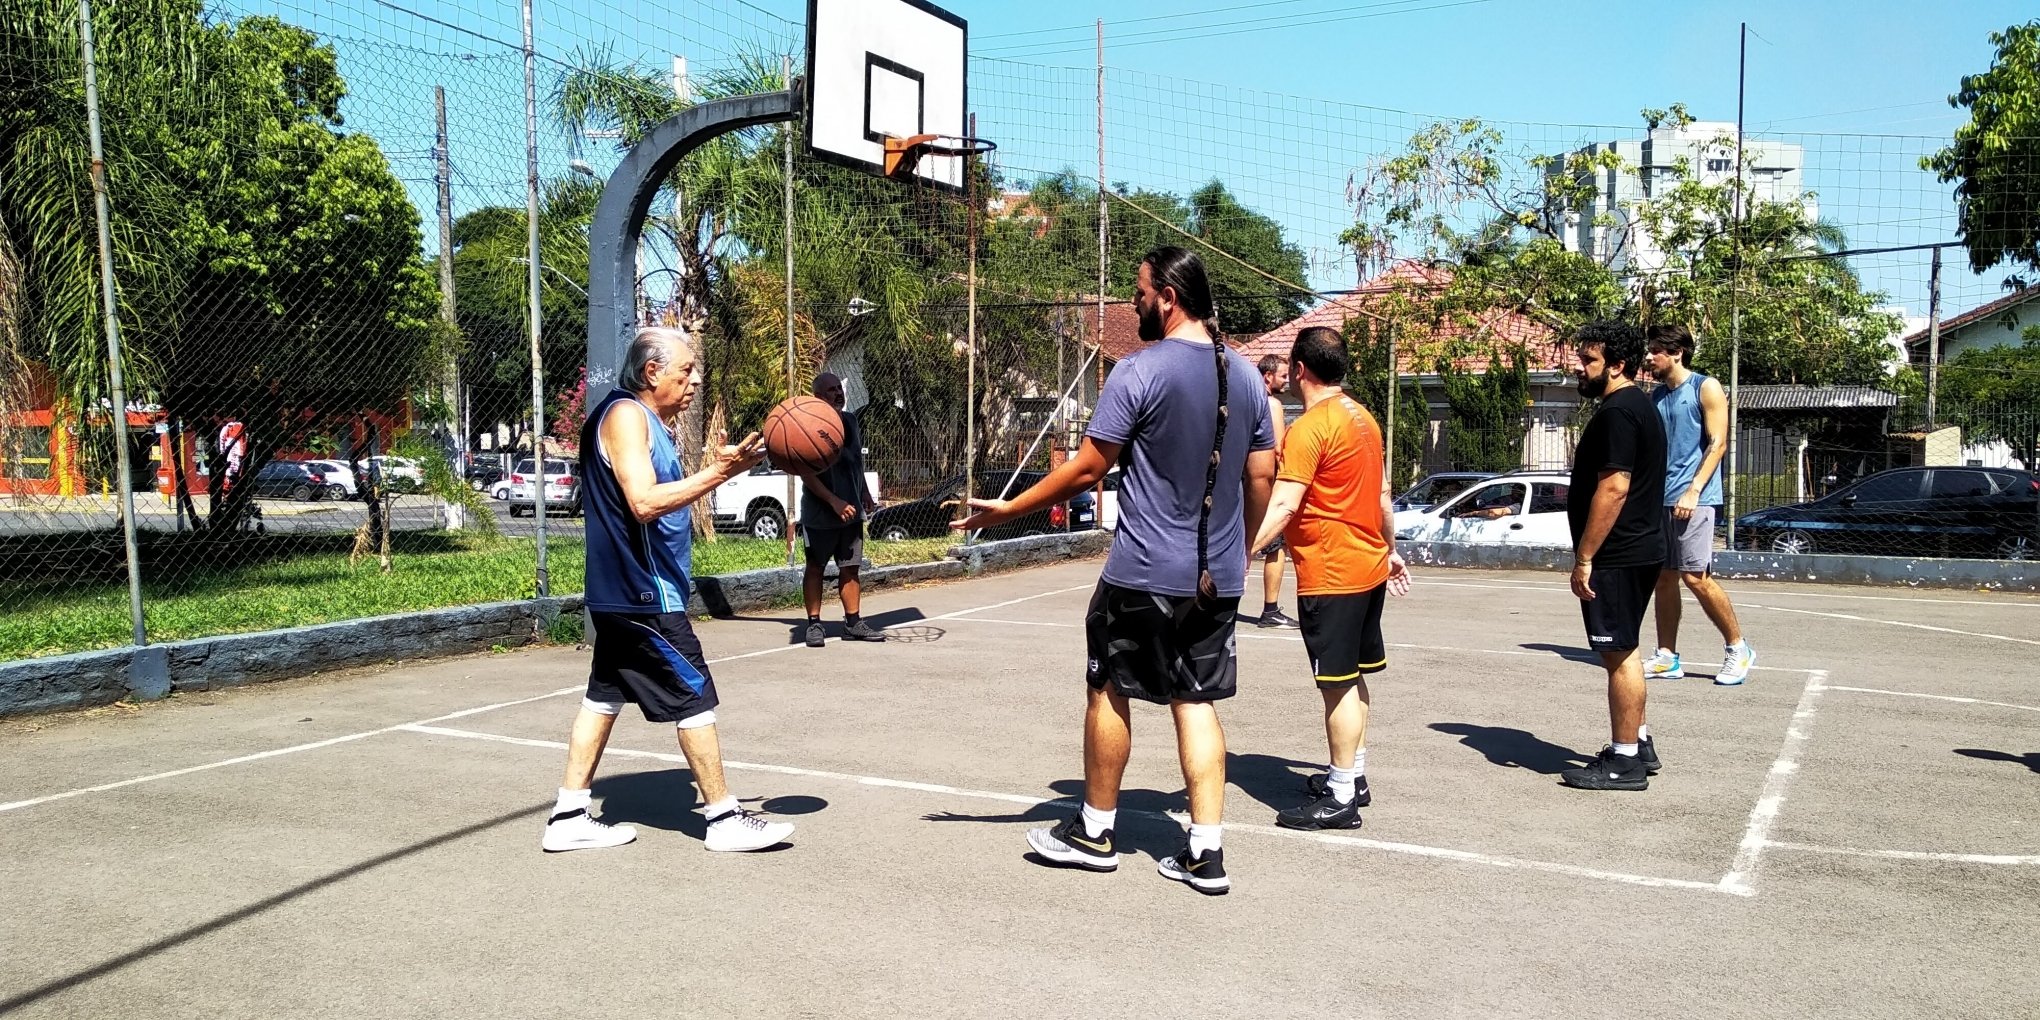 Grupo de amigos jogando basquete em uma quadra pública ao ar livre